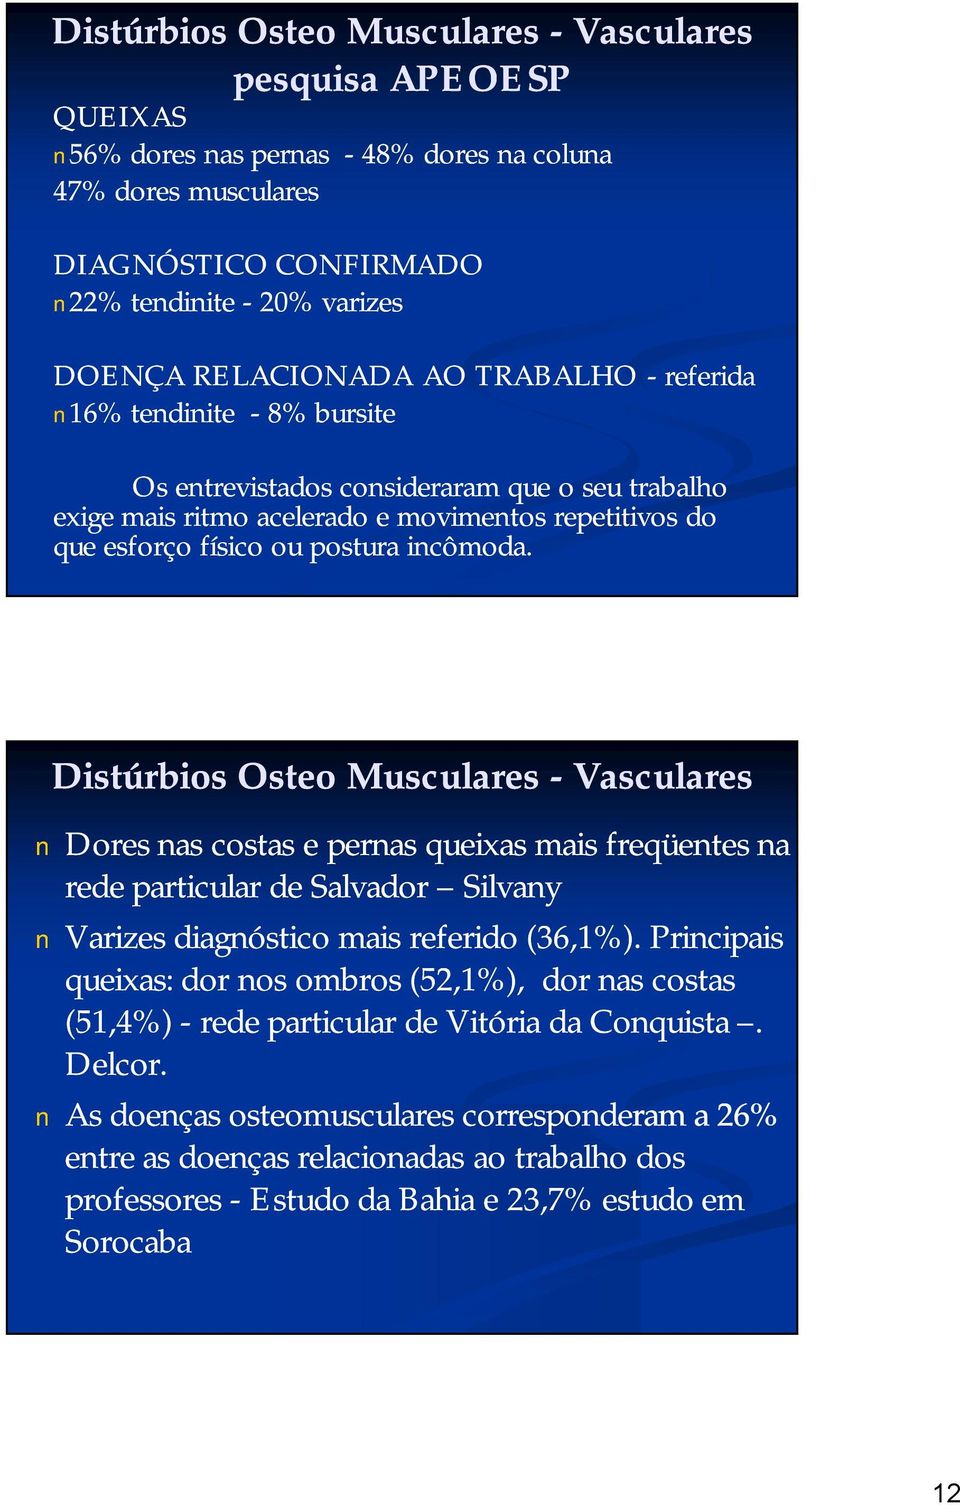 Distúrbios Osteo Musculares -Vasculares Dores nas costas e pernas queixas mais freqüentes na rede particular de Salvador Silvany Varizes diagnóstico mais referido (36,1%).